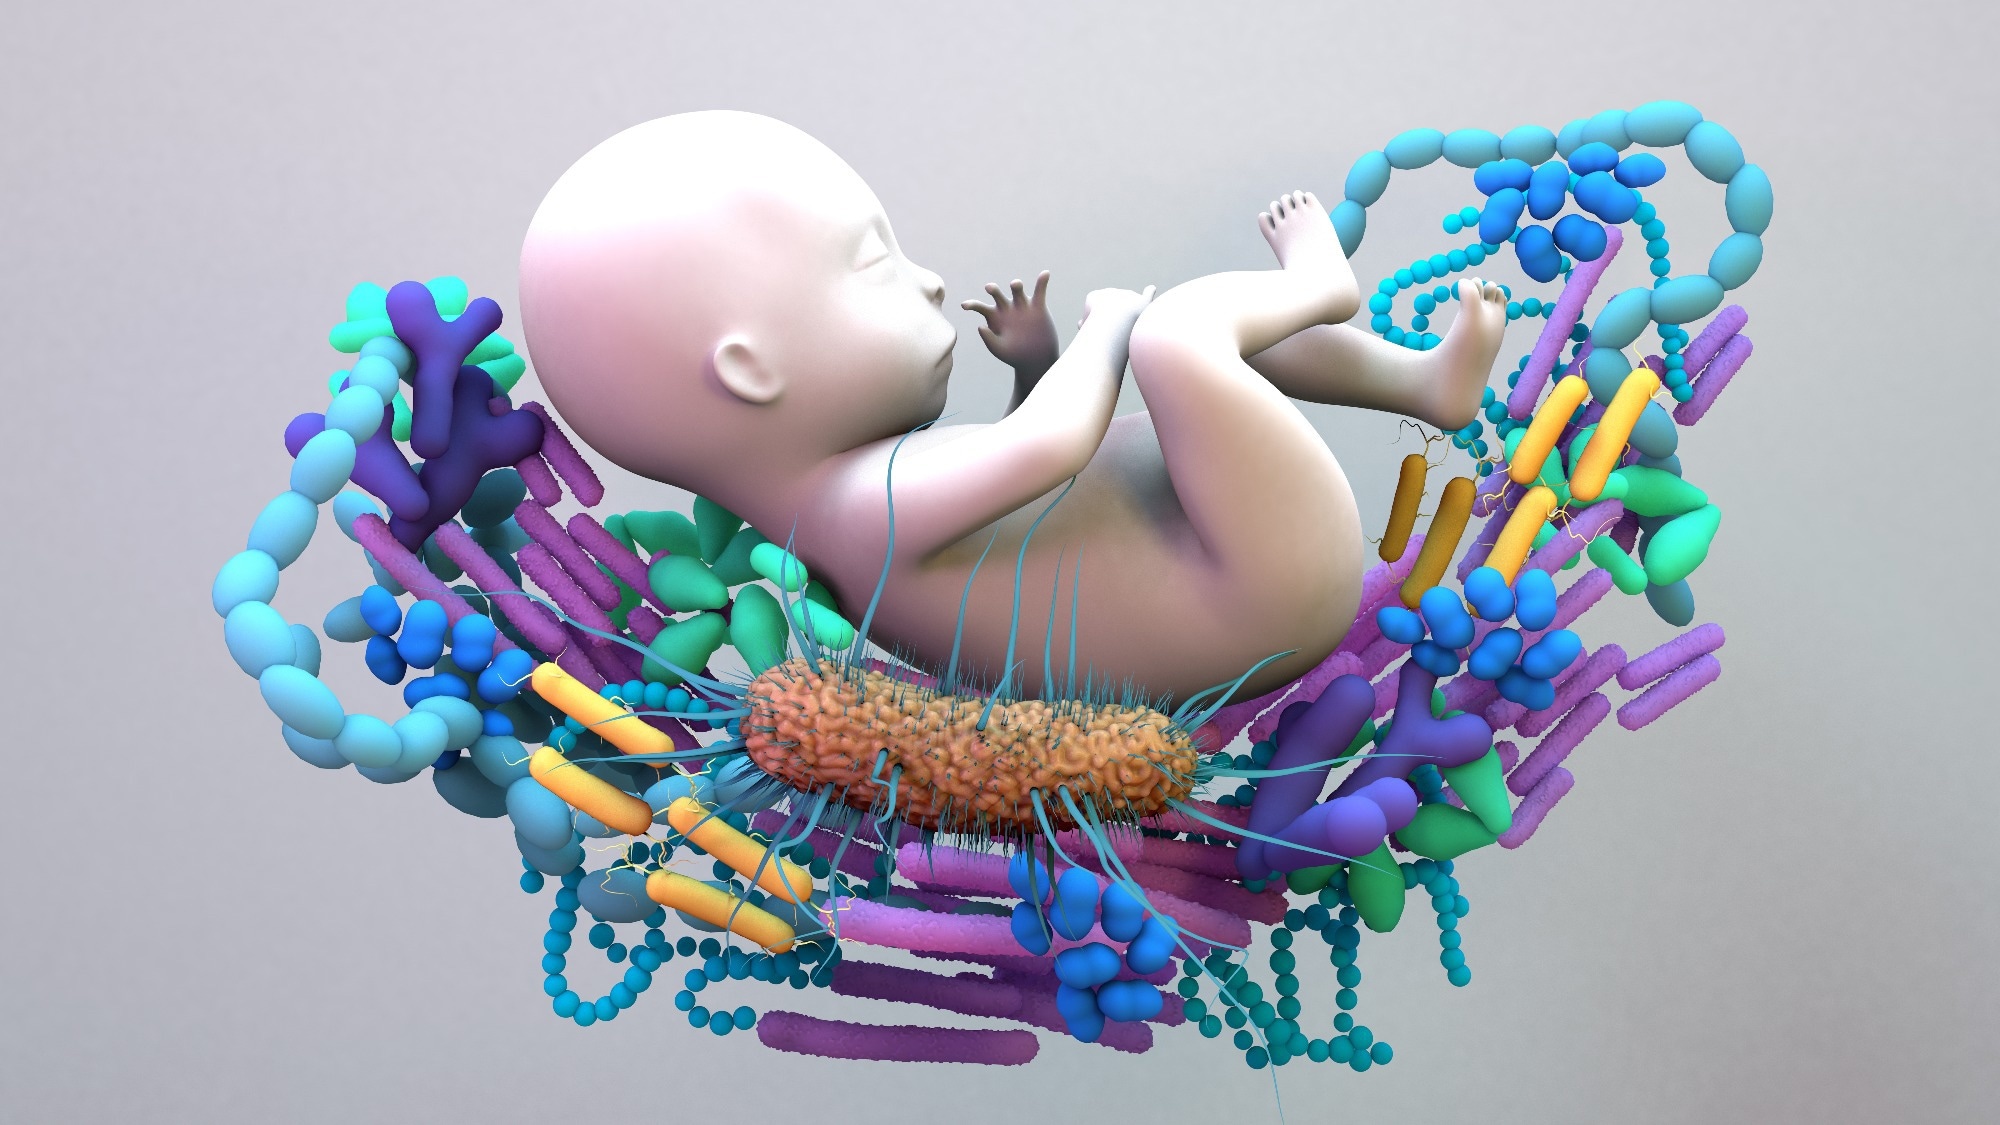 Étude : Le microbiome intestinal prédit les maladies atopiques dans une cohorte de nourrissons avec une exposition bactérienne réduite en raison de la distanciation sociale.  Crédit d'image : Design_Cells / Shutterstock